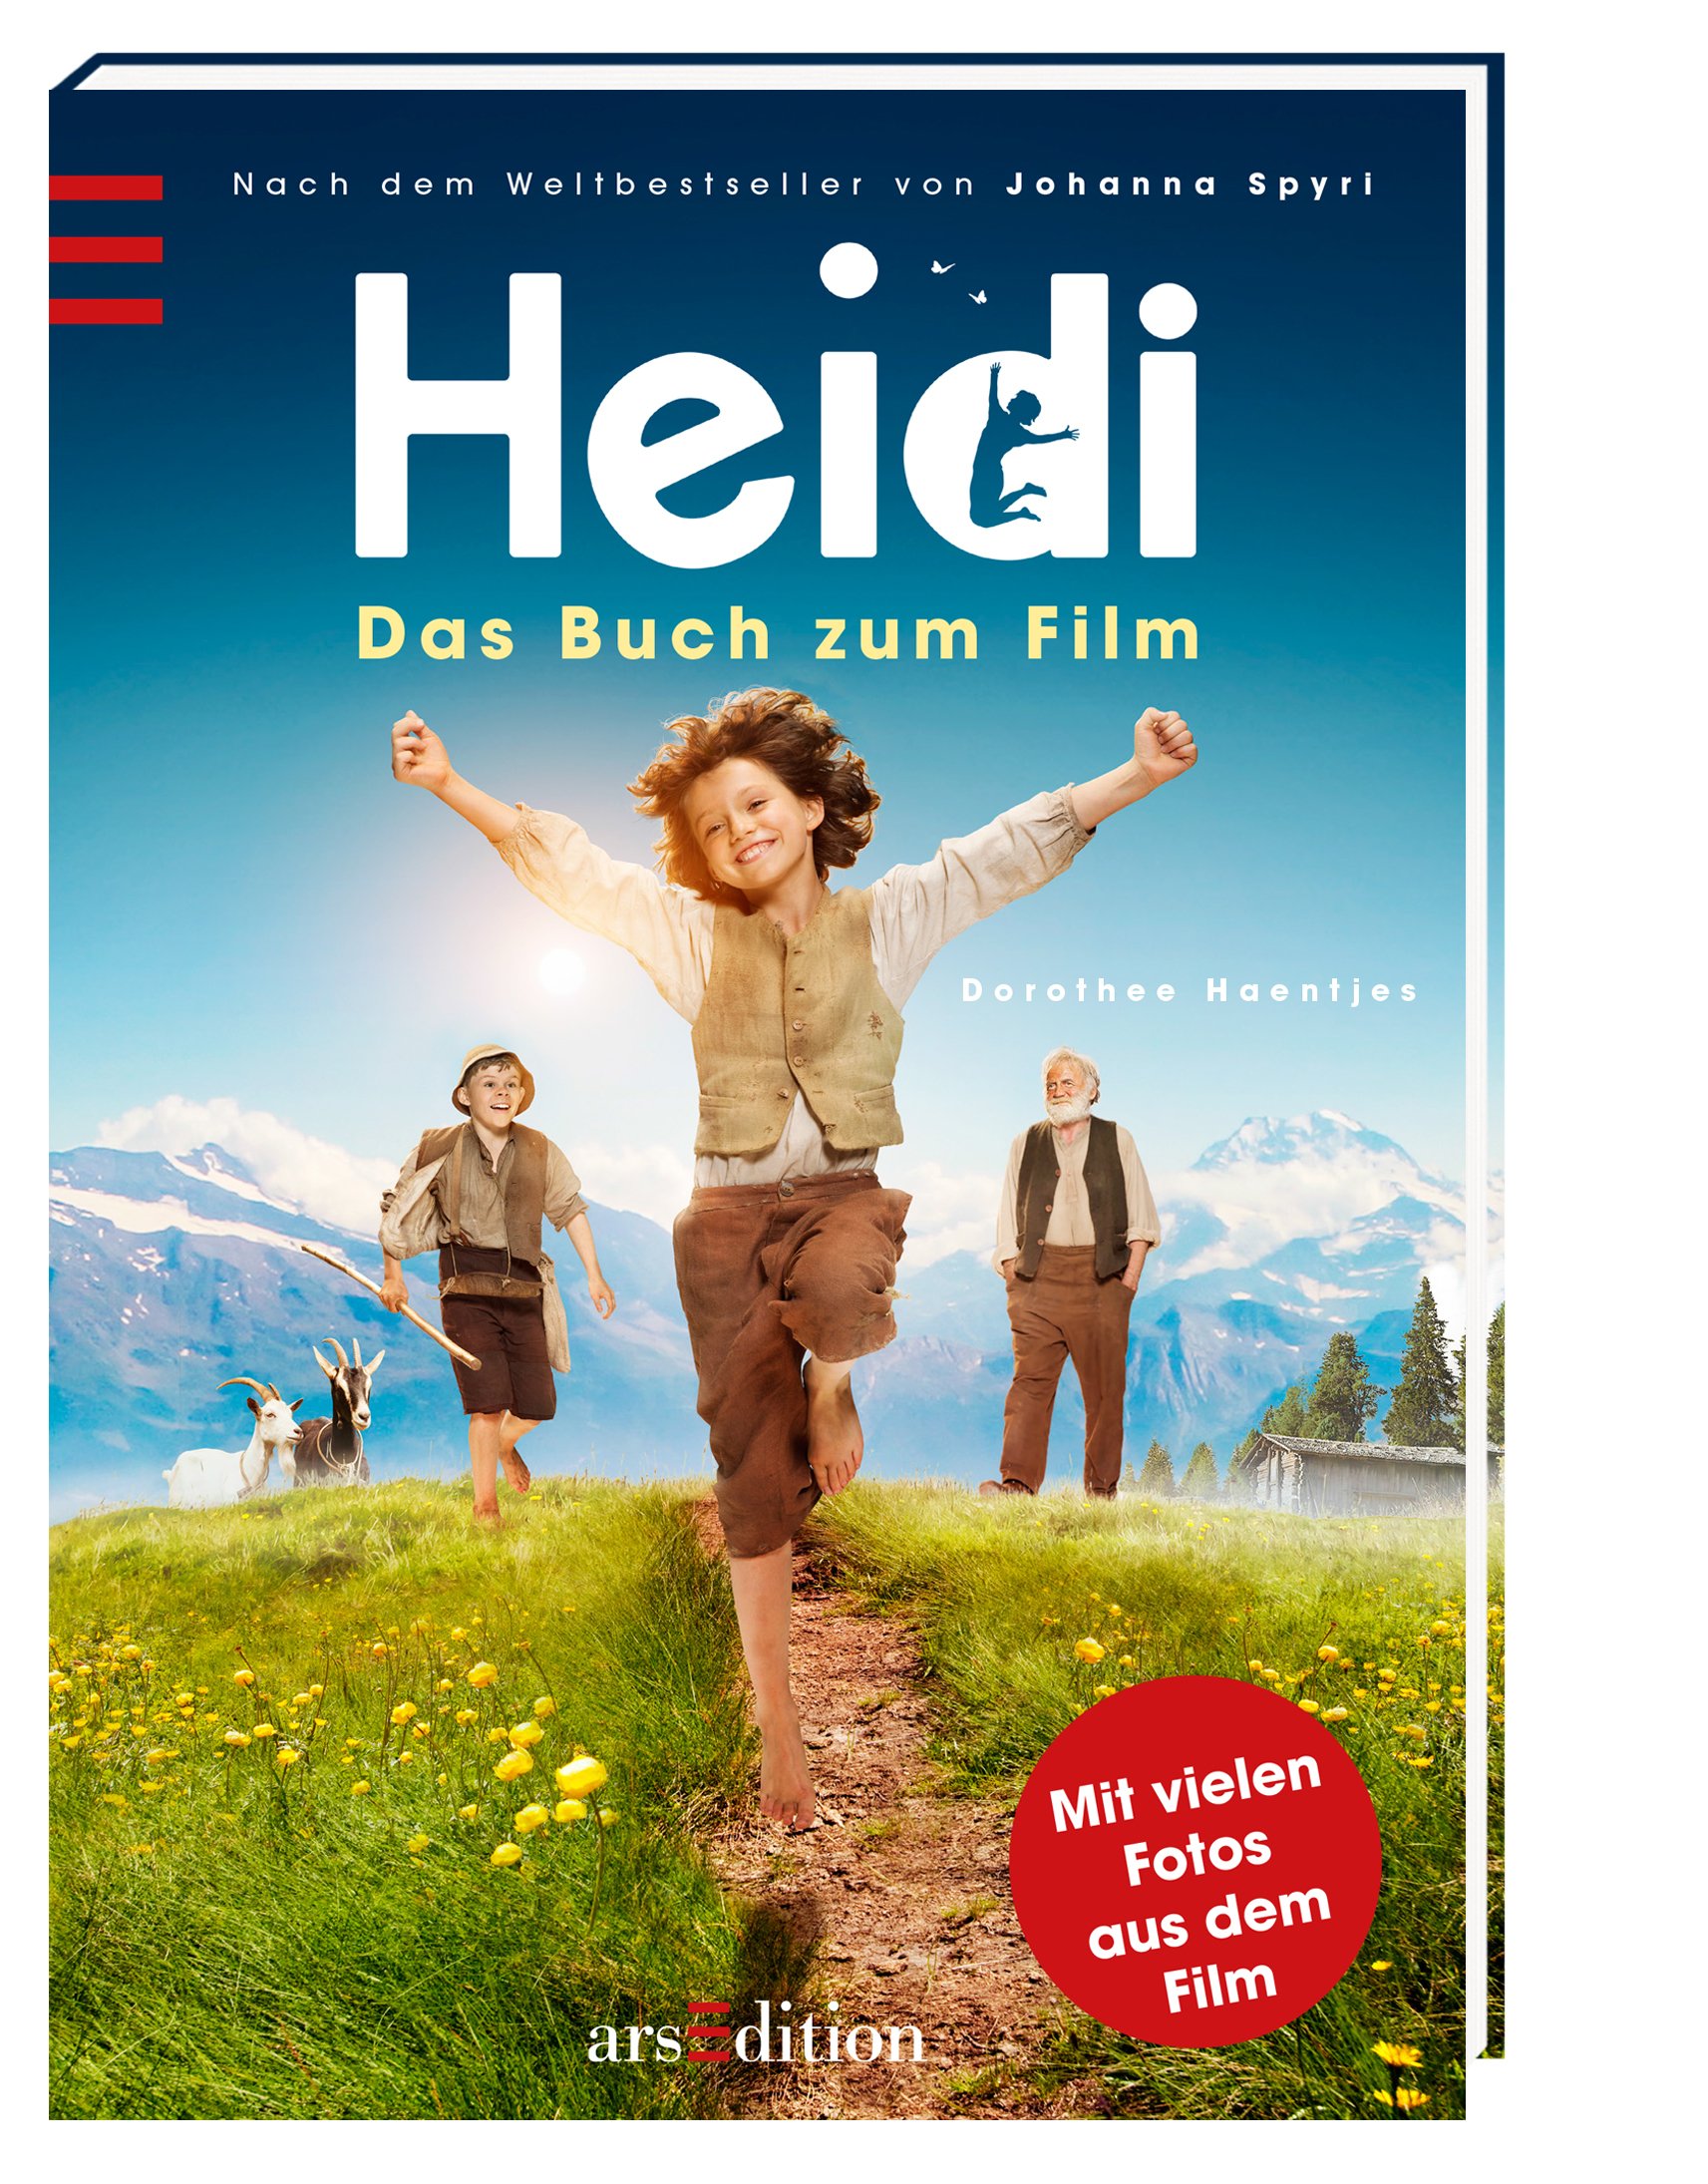 Heidi- Das Buch zum Film